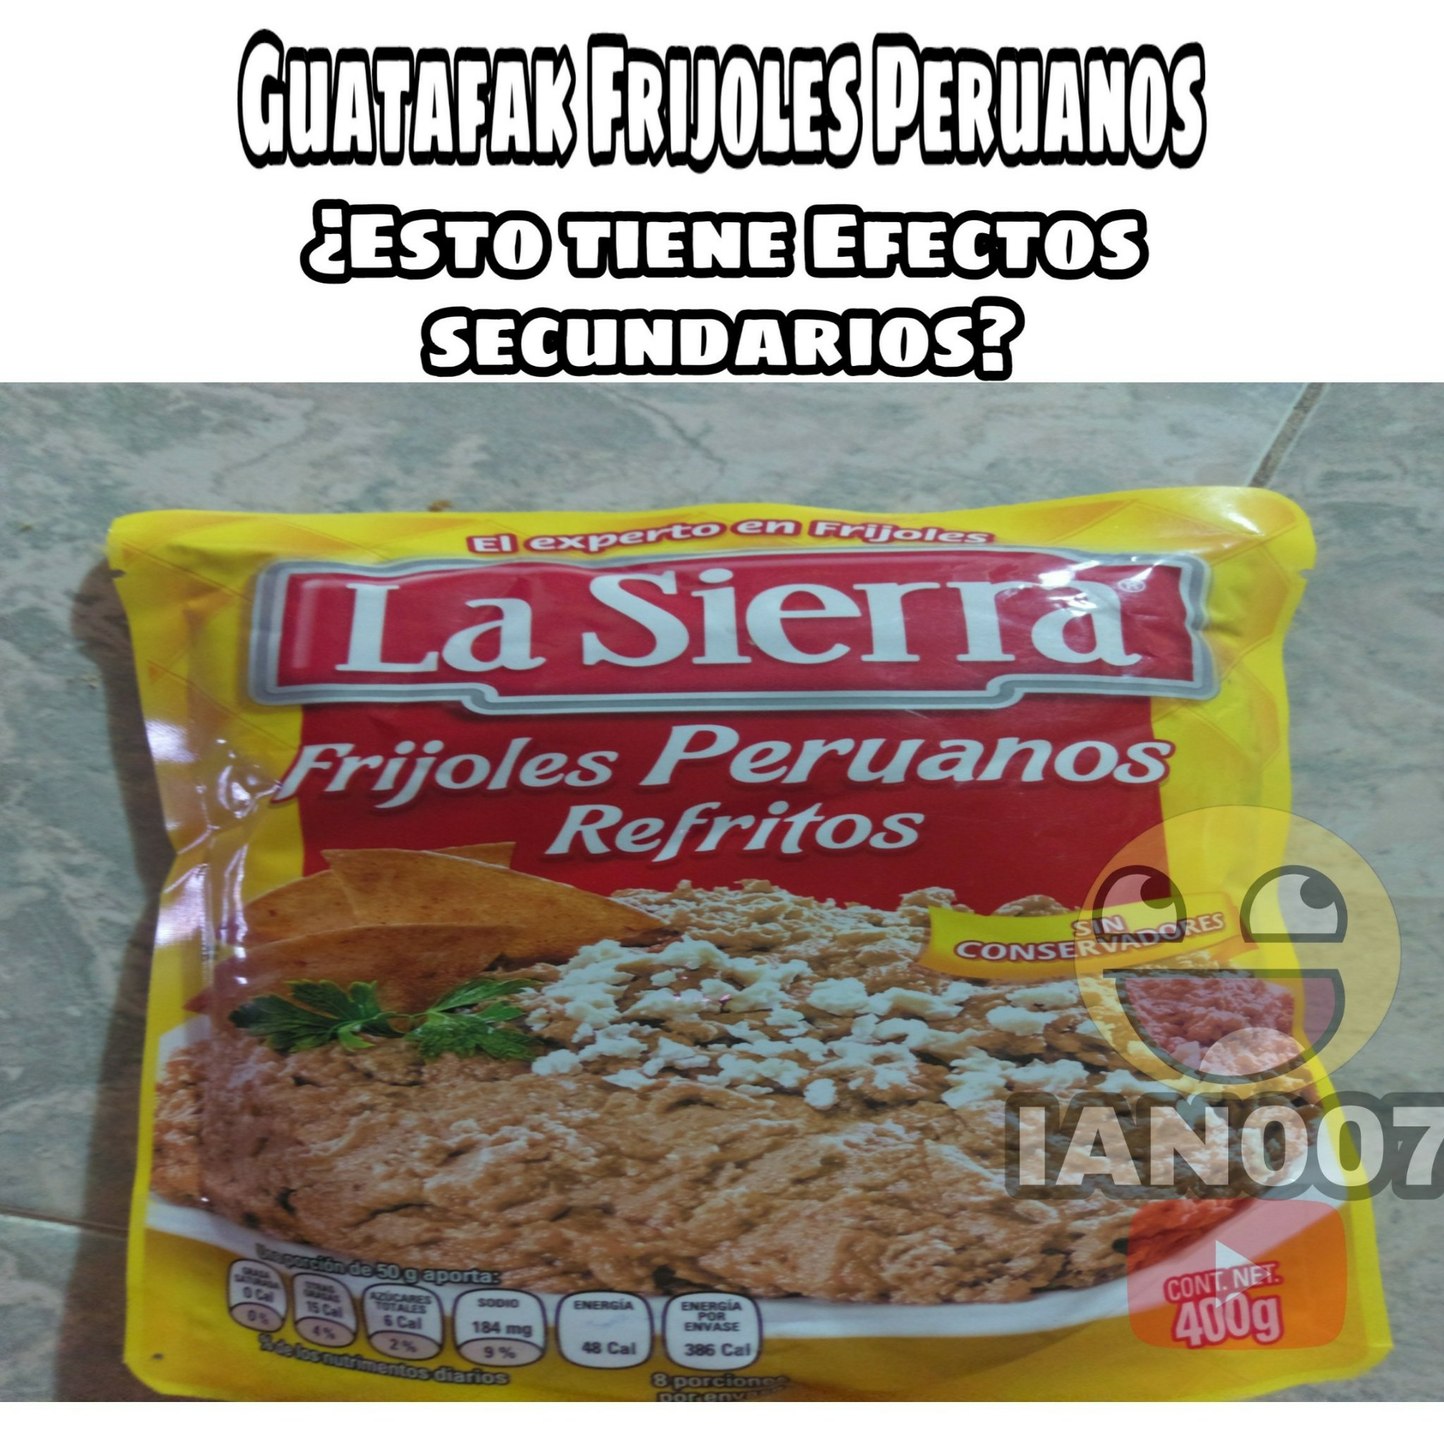 Gudatafak Frijoles peruanos!!! - meme